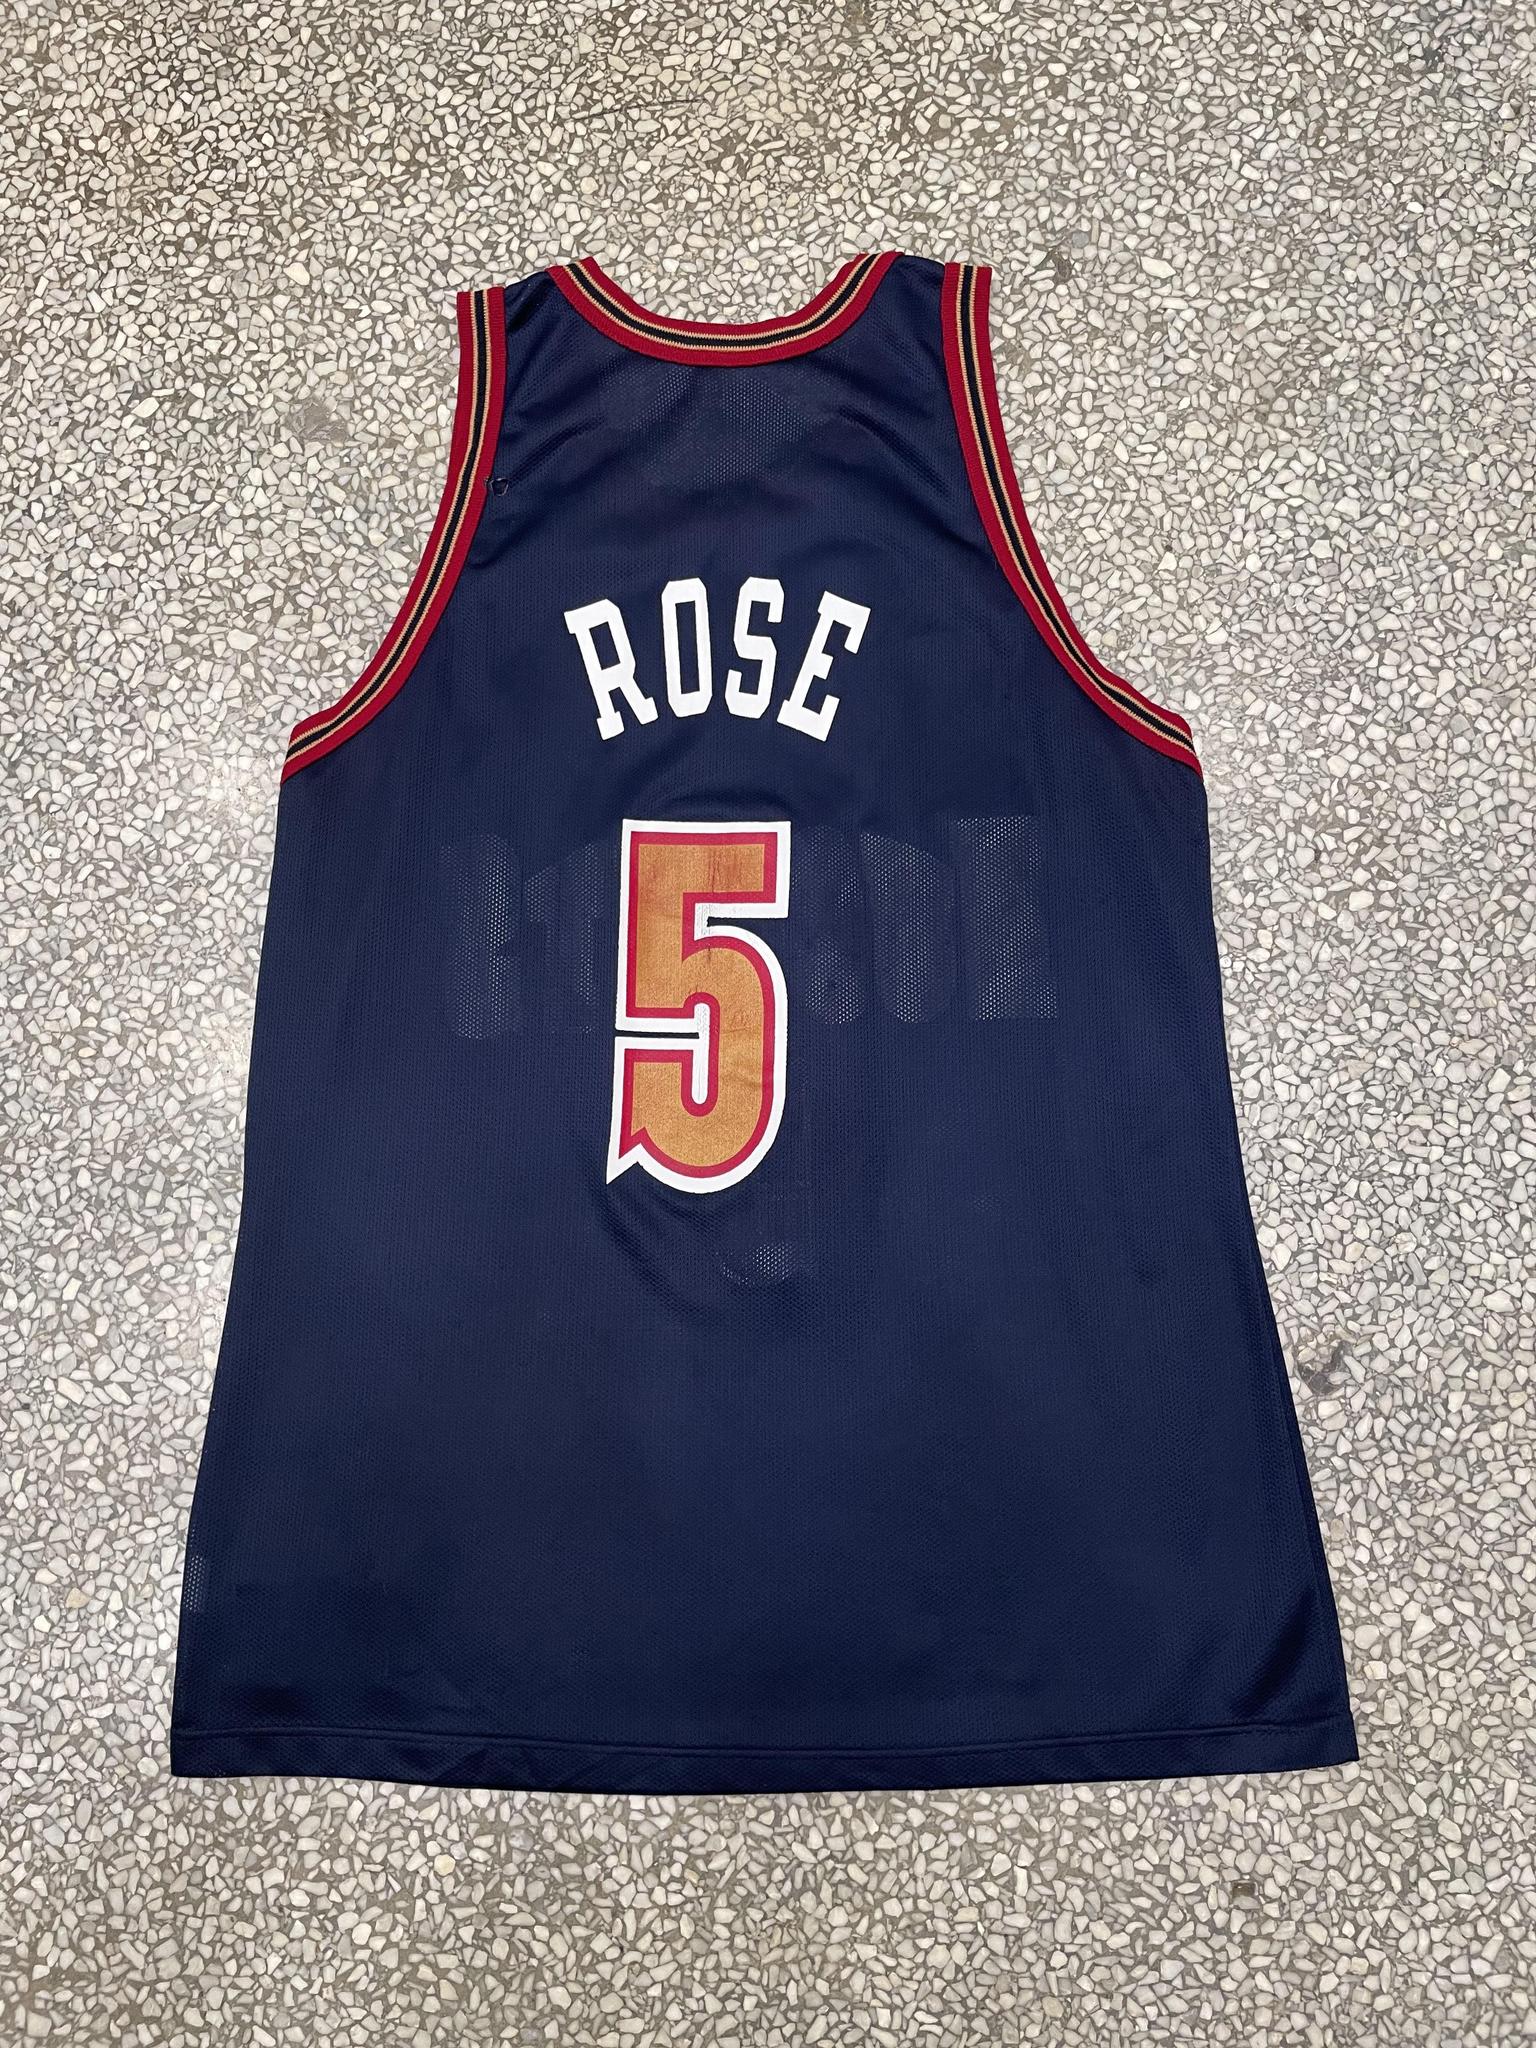 Denver Nuggets Jalen Rose Vintage Champion Jersey – ABC Vintage